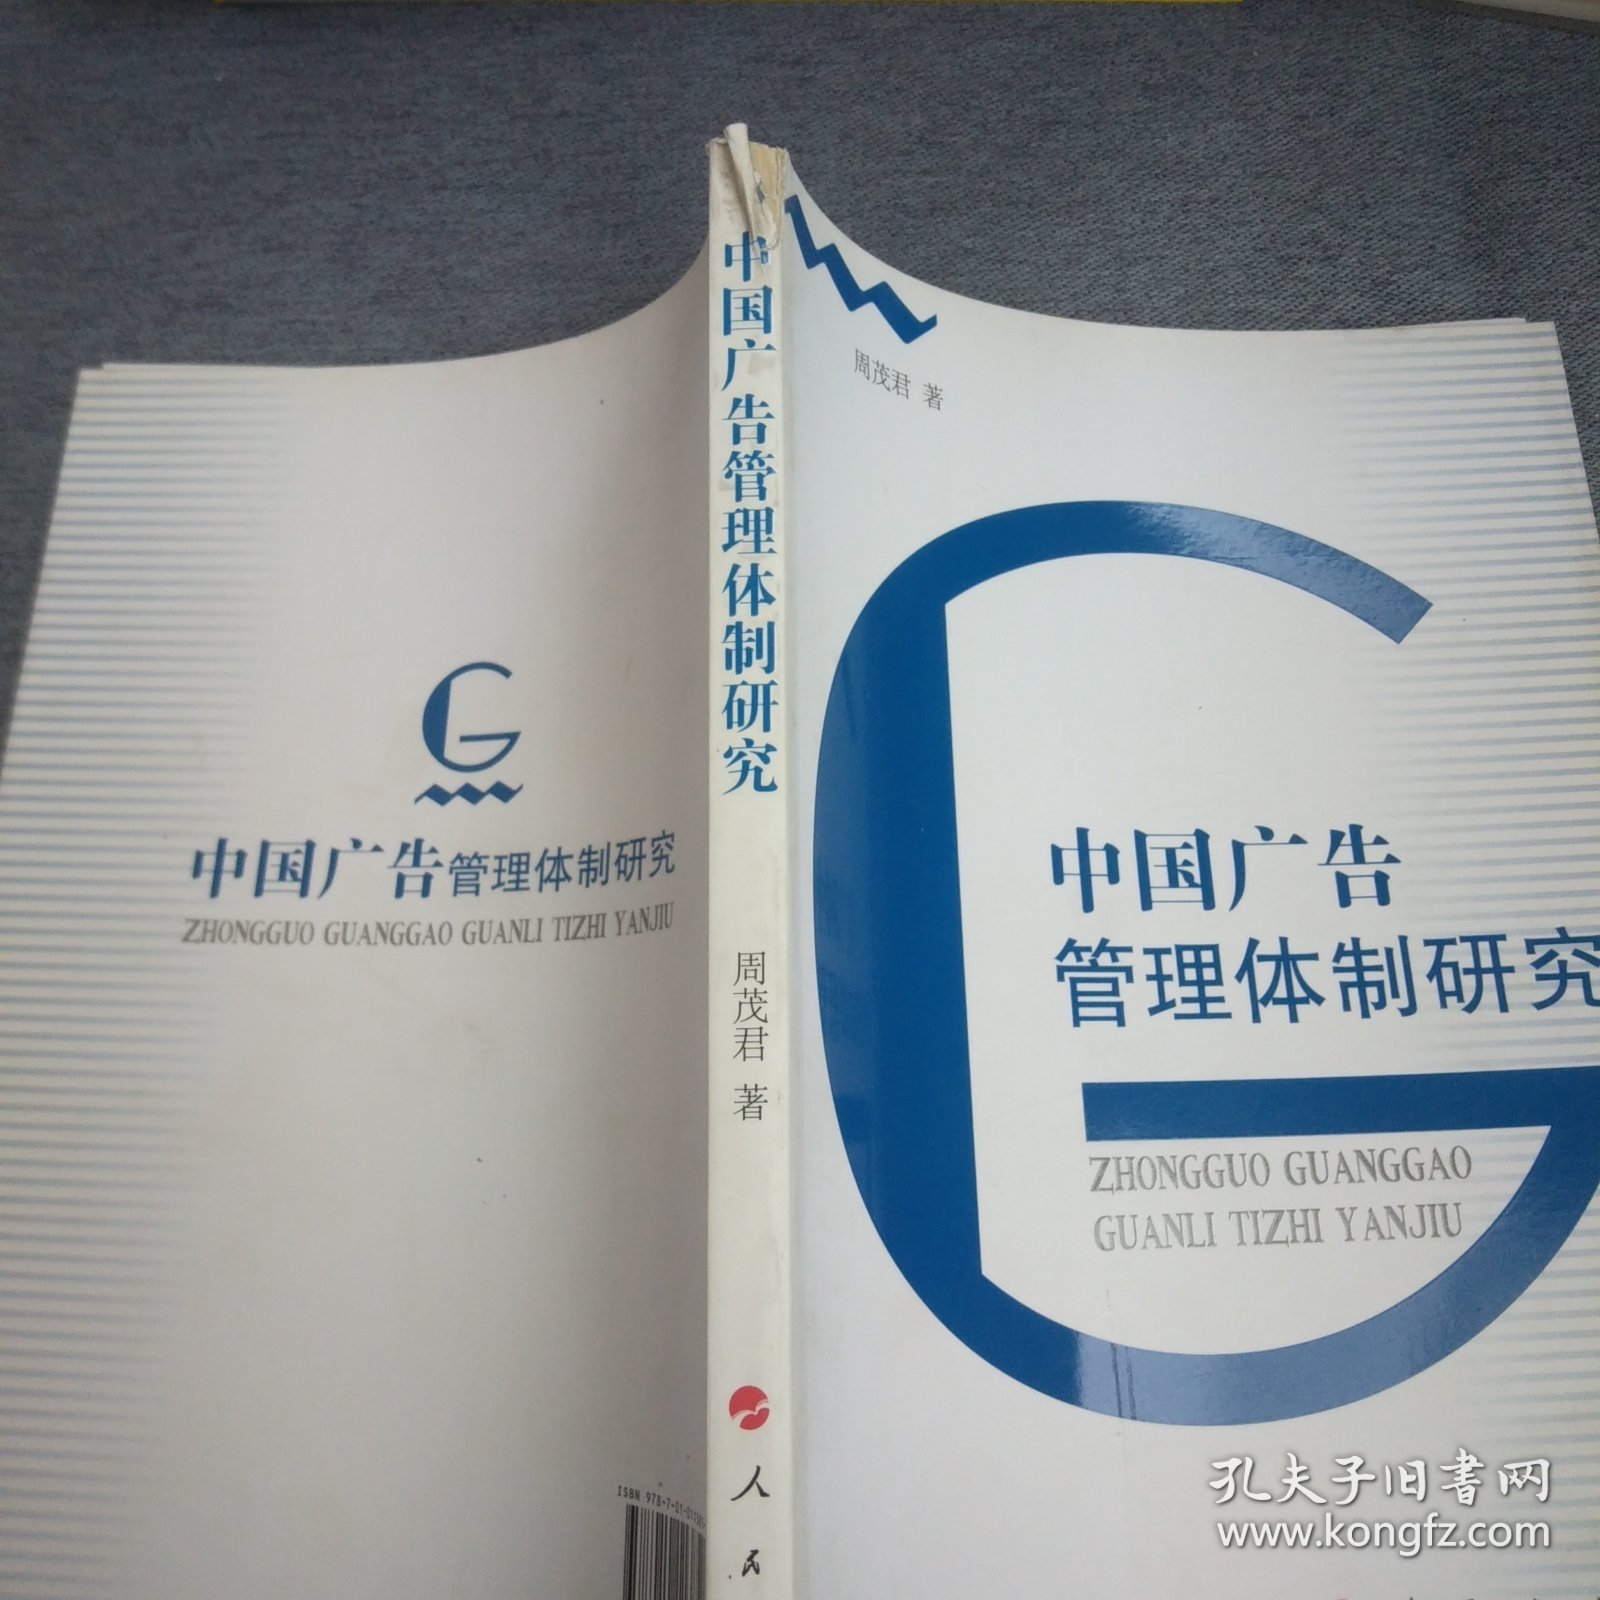 中国广告管理体制研究